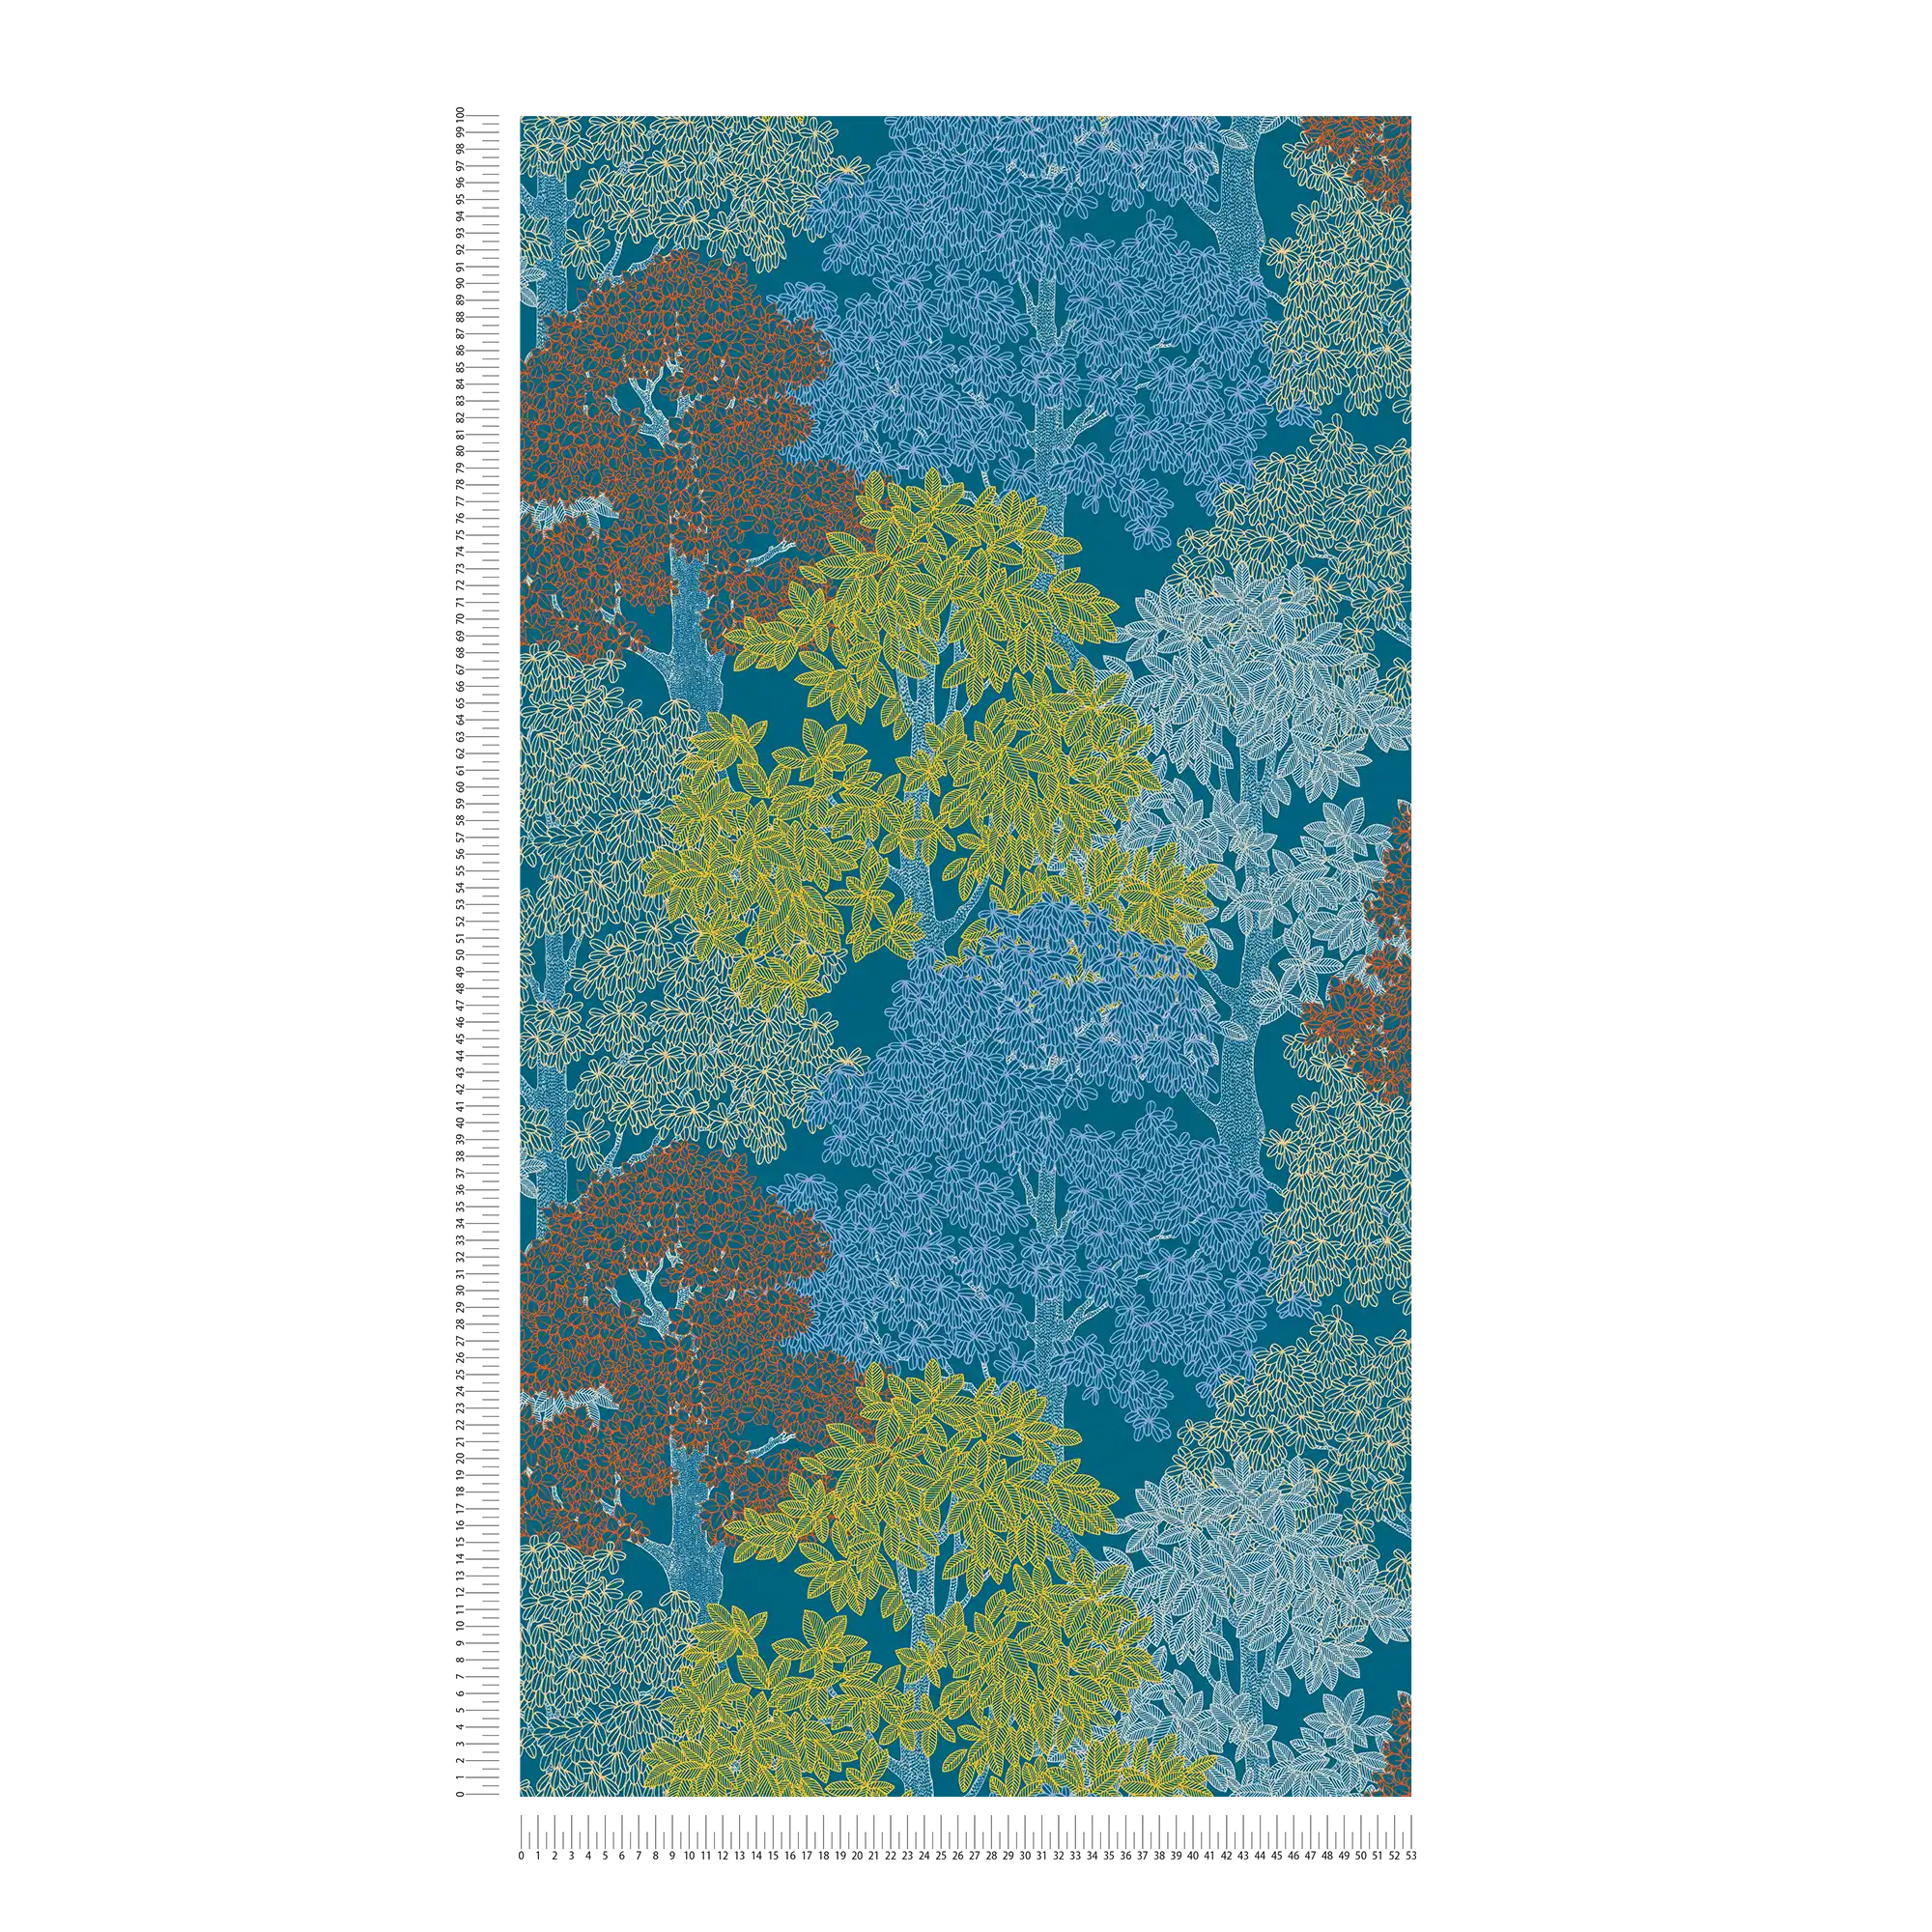             Scandinavische stijl behang bomen patroon - blauw, geel, rood
        